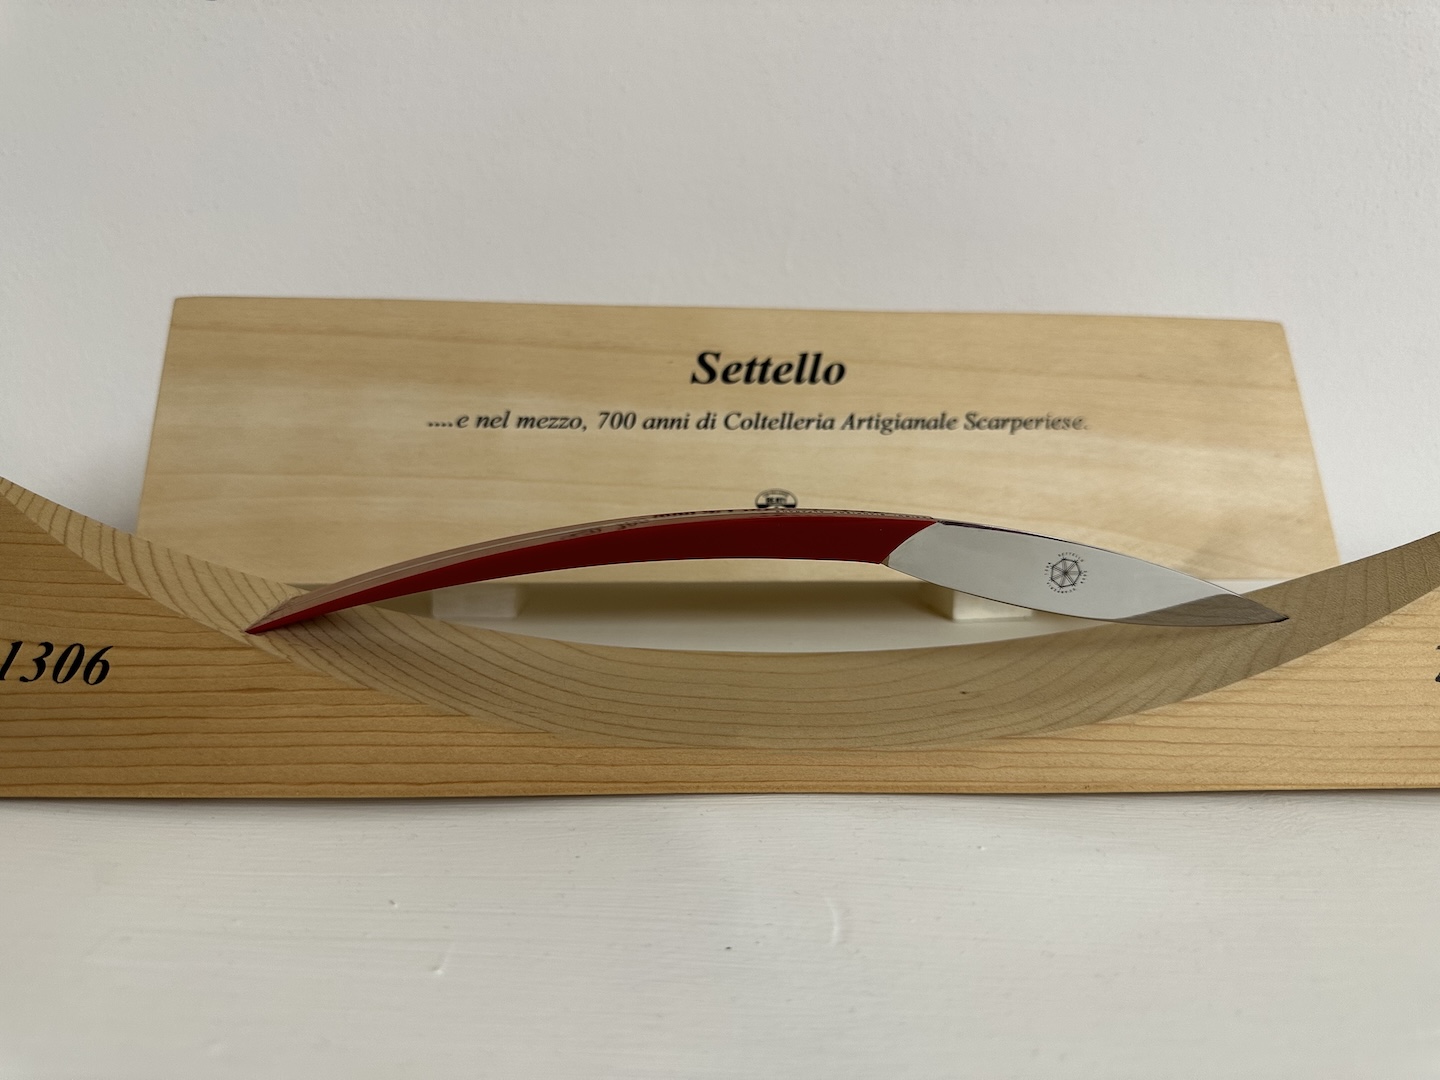 THE ITALIAN KNIFE CAPITAL - SCARPERIA, ITALY